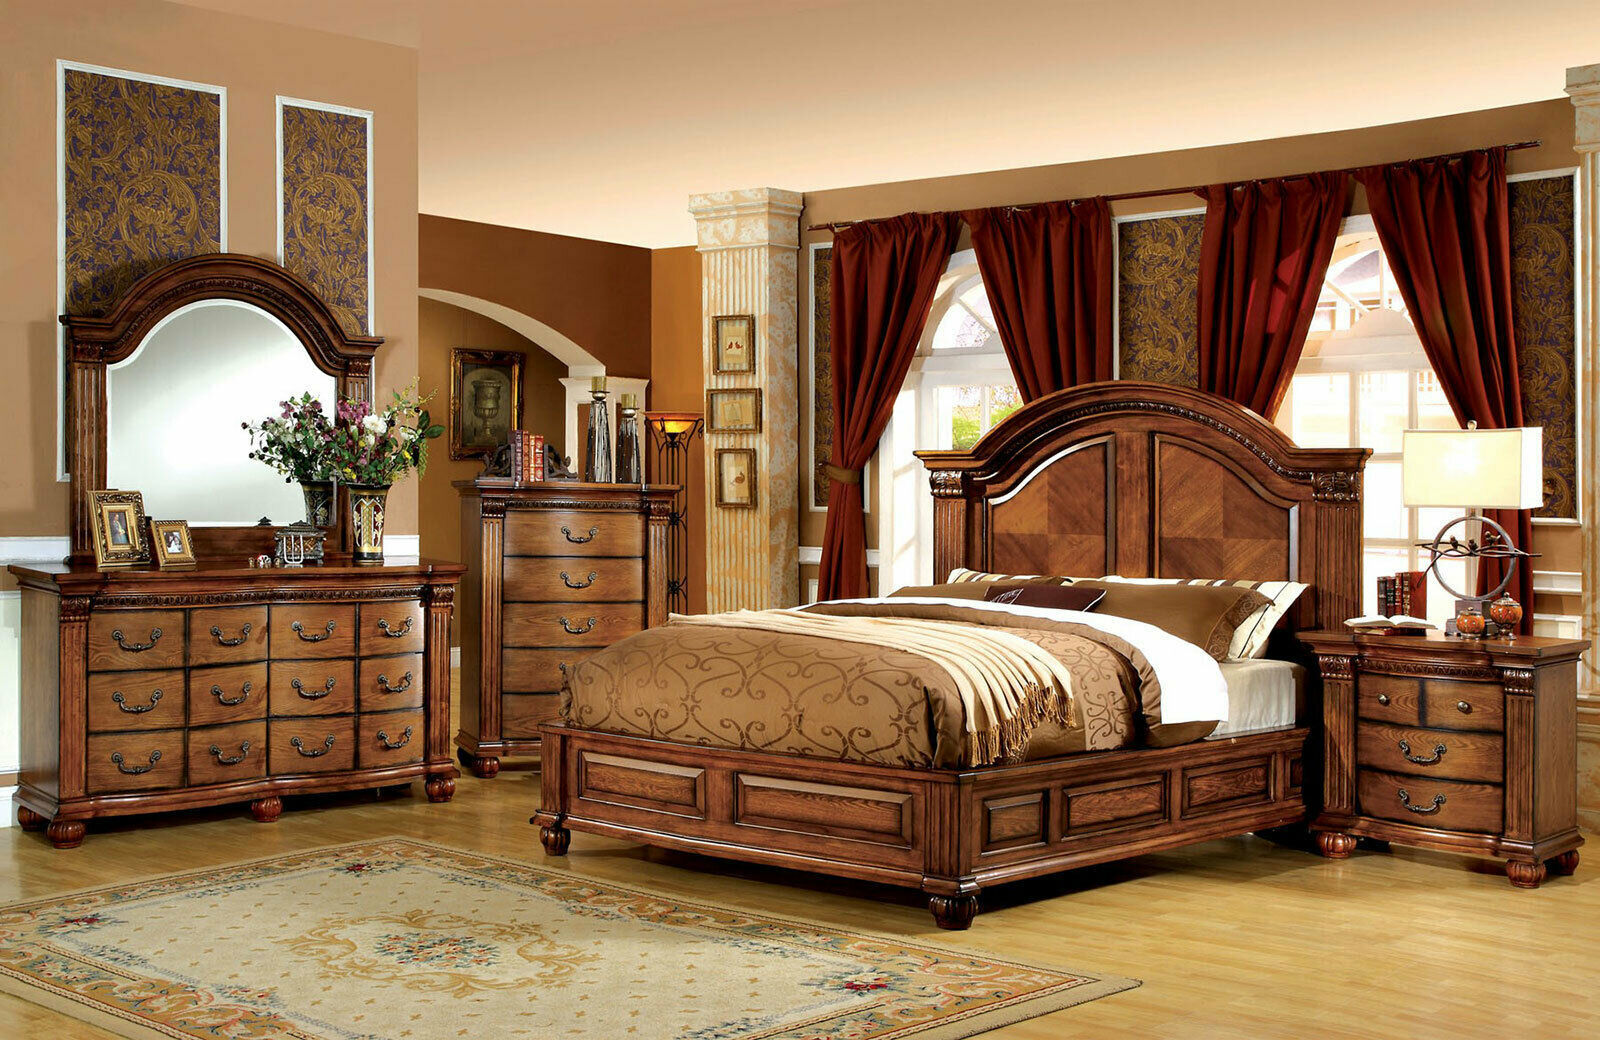 oak bedroom furniture images